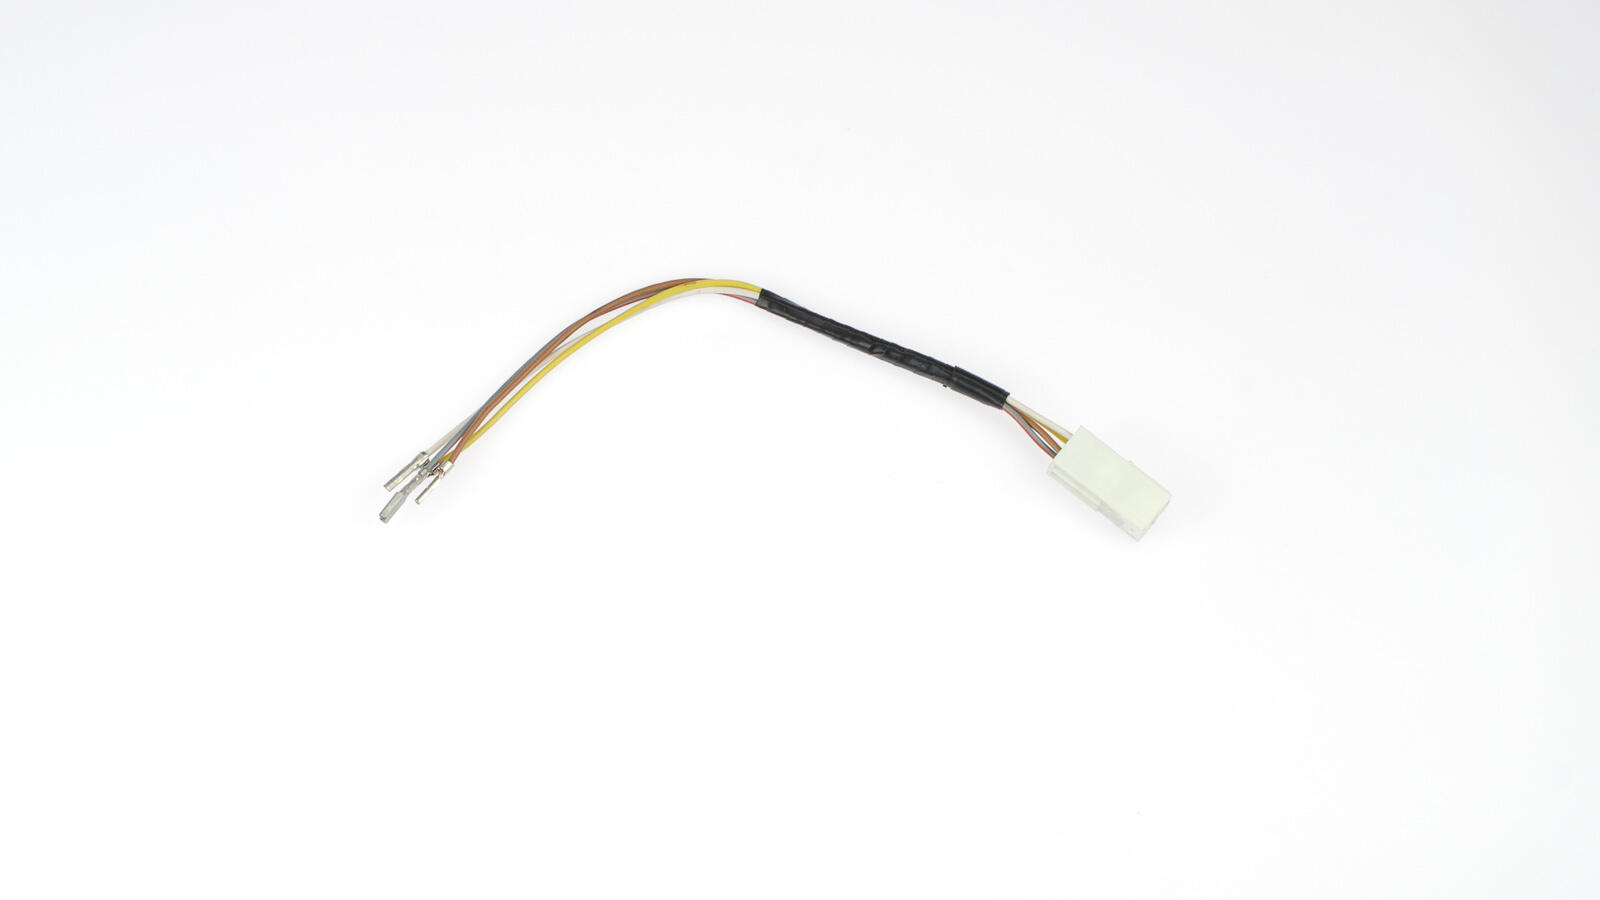 Kabel für Scheinwerfer S53, S83